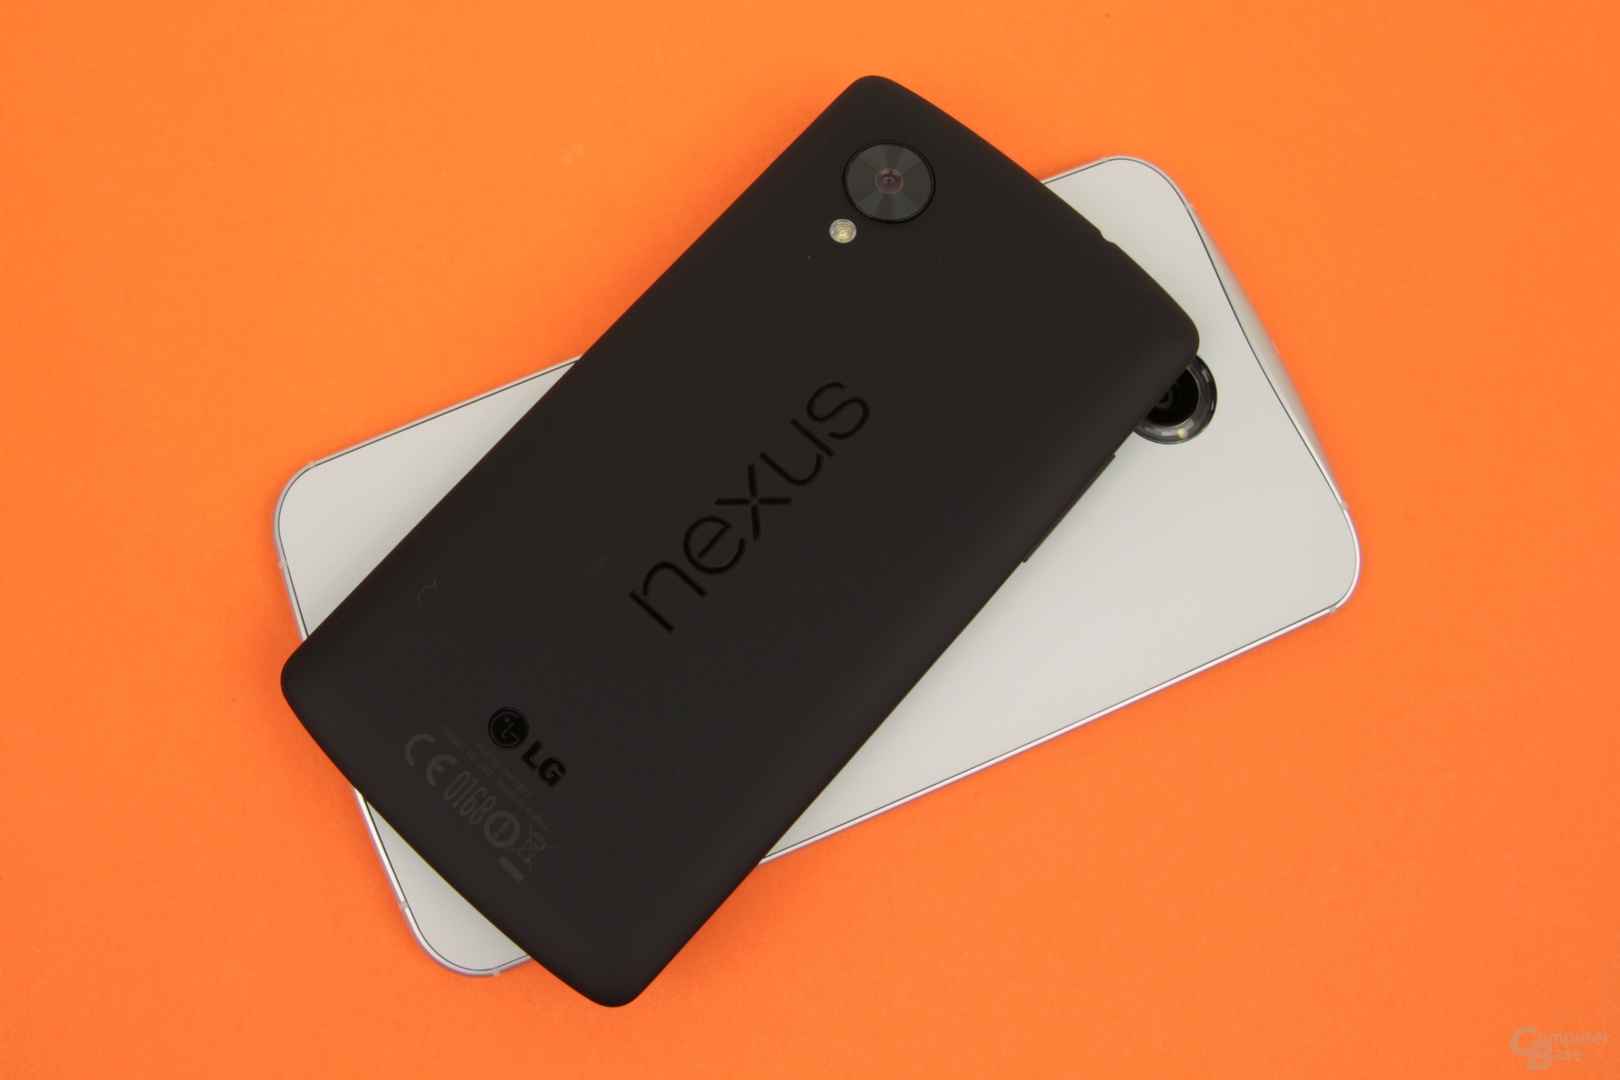 Das Nexus 6 ist deutlich größer als das Nexus 5